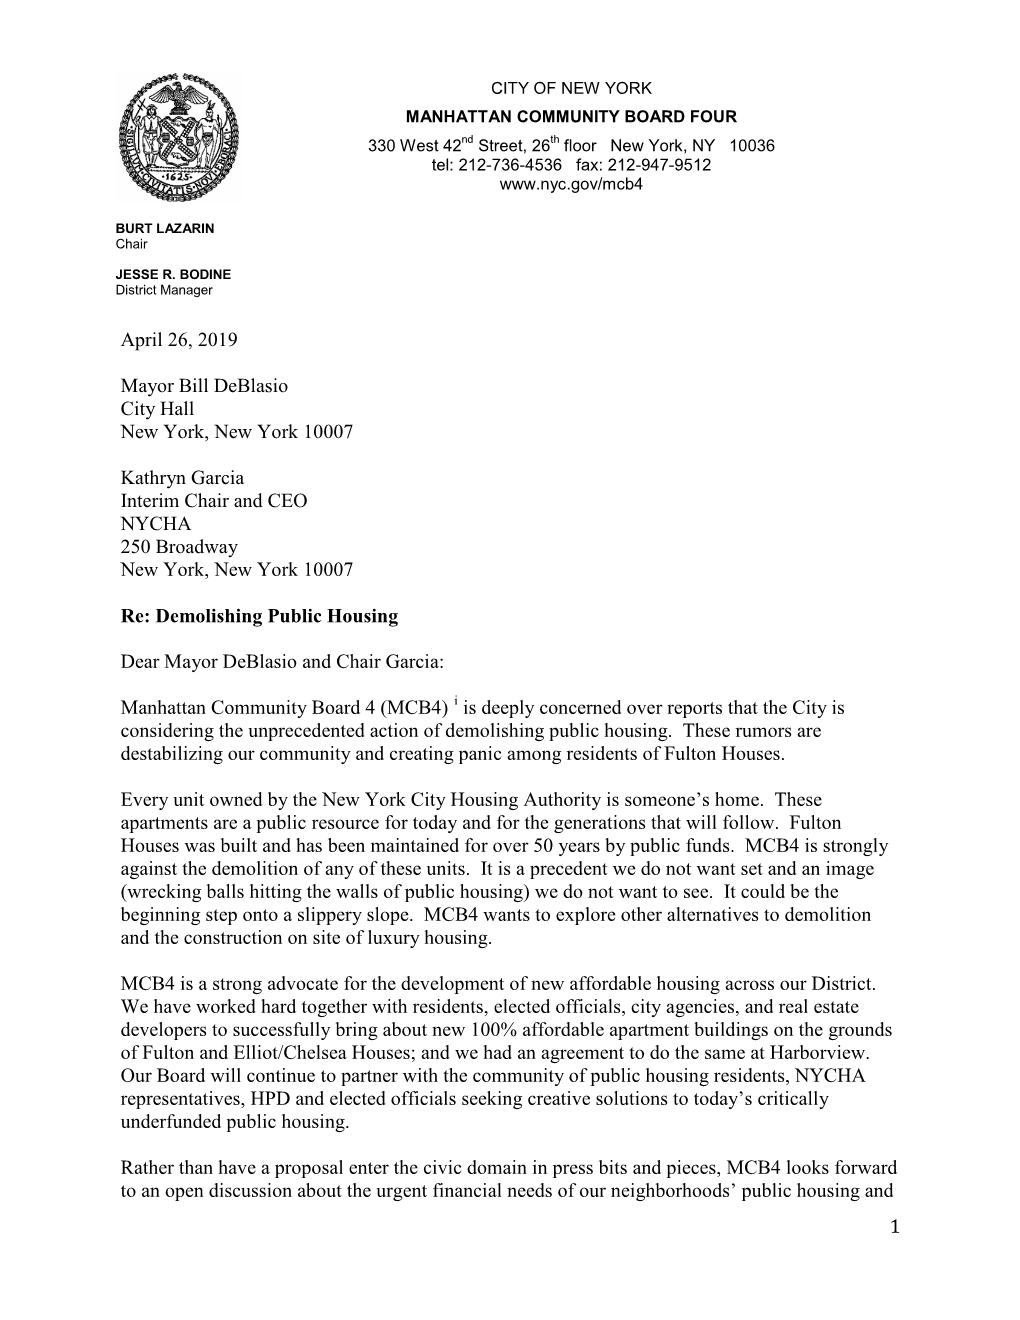 Letter to Mayor Bill Deblasio Re Demolishing Public Housing